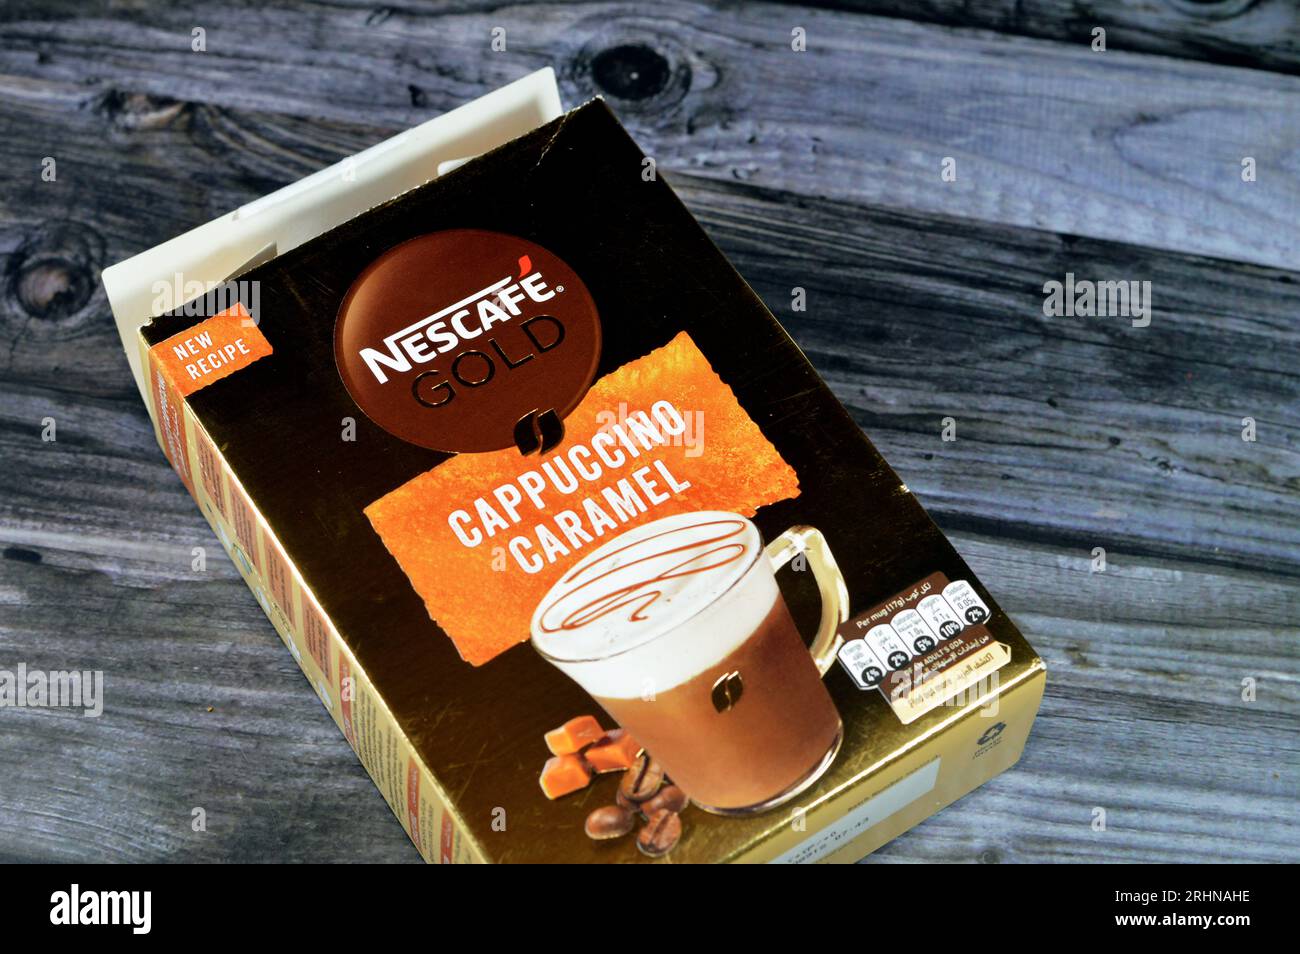 Nescafé GOLD Cappuccino sweetened - 18.5g